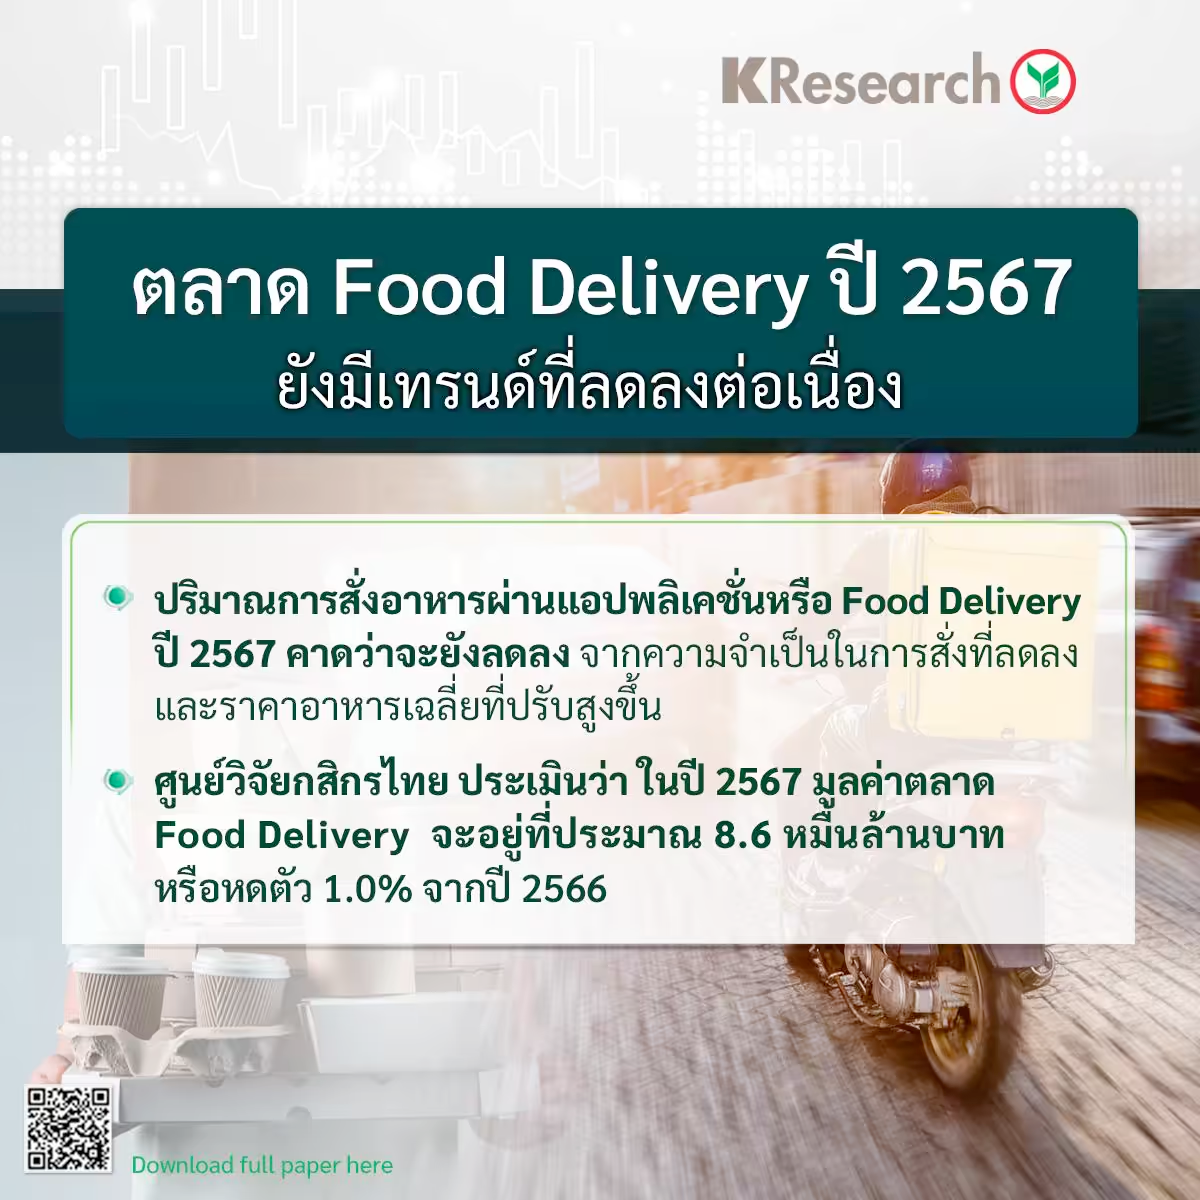 ศูนย์วิจัยกสิกรไทยประเมินตลาด Food Delivery ปี 2567 ยังมีเทรนด์ที่ลดลงต่อเนื่อง